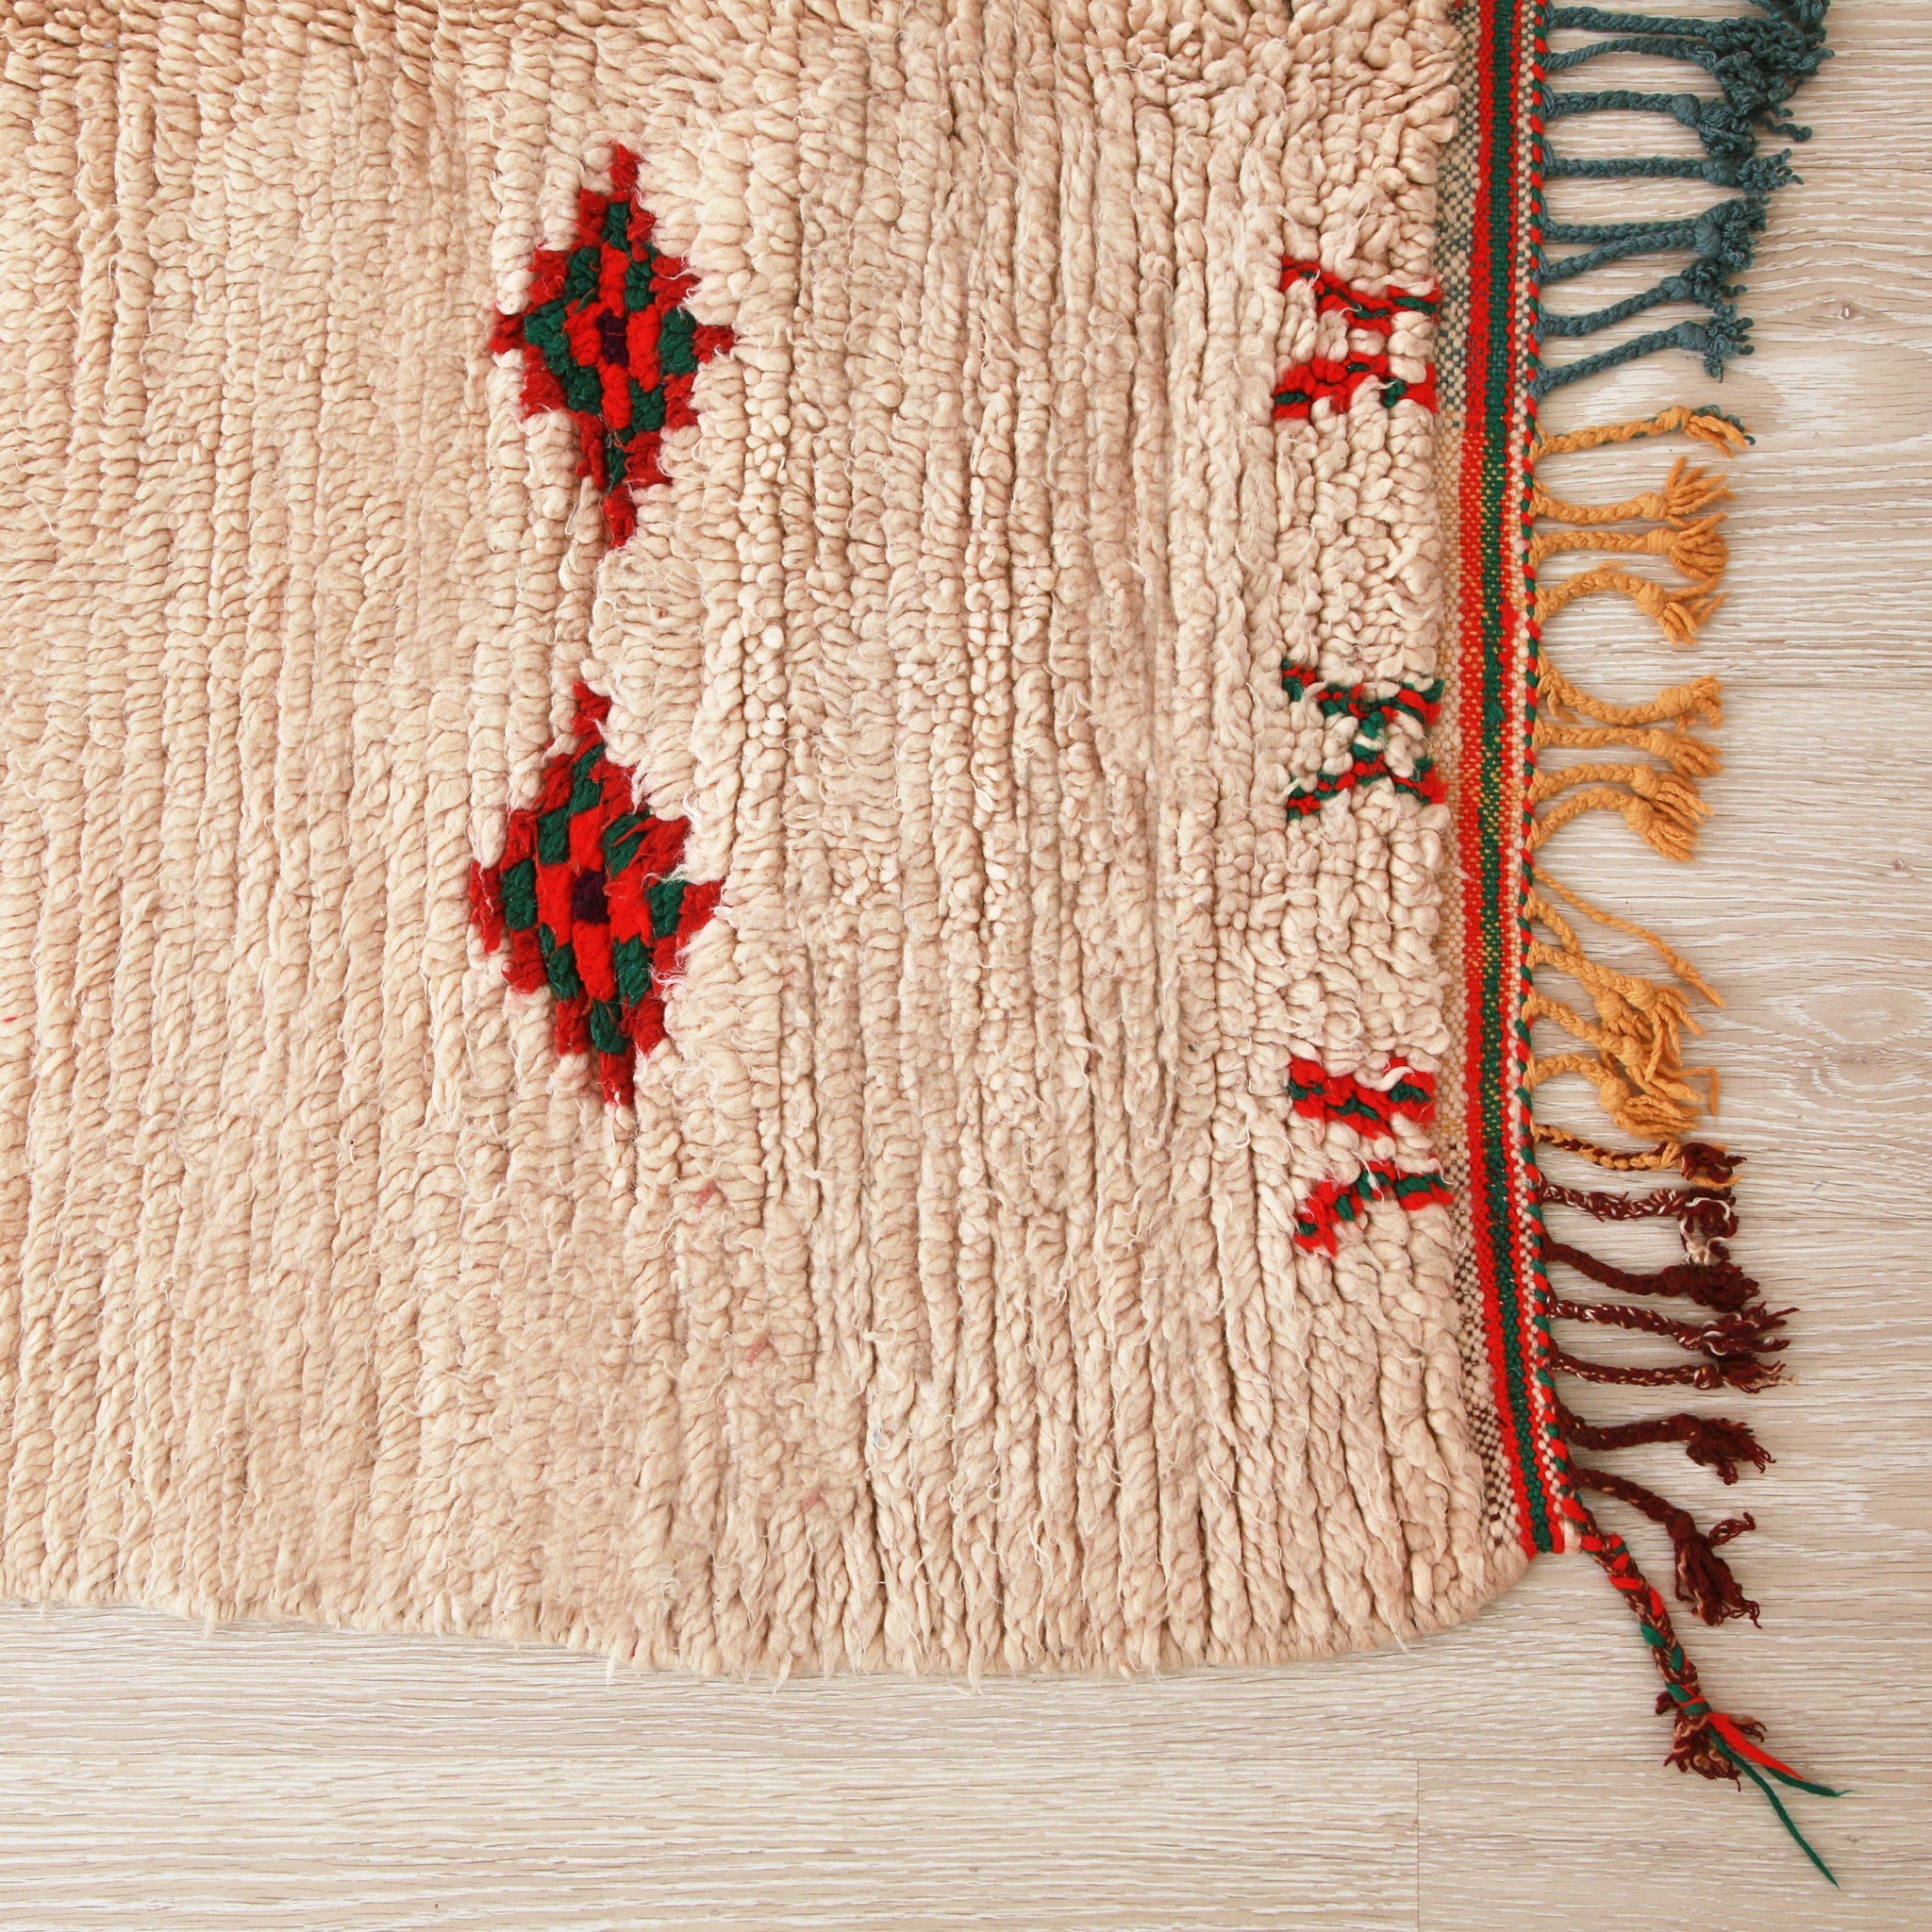 angolo di un tappeto azilal vissuto su lana bianca con piccoli disegni,la frangie è rosso scuro e gialla